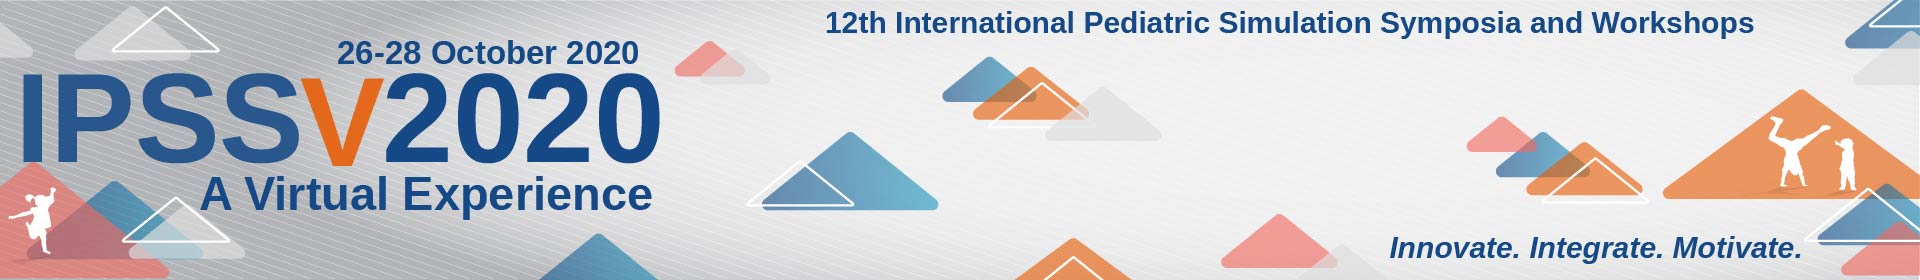 IPSSV2020 Event Banner